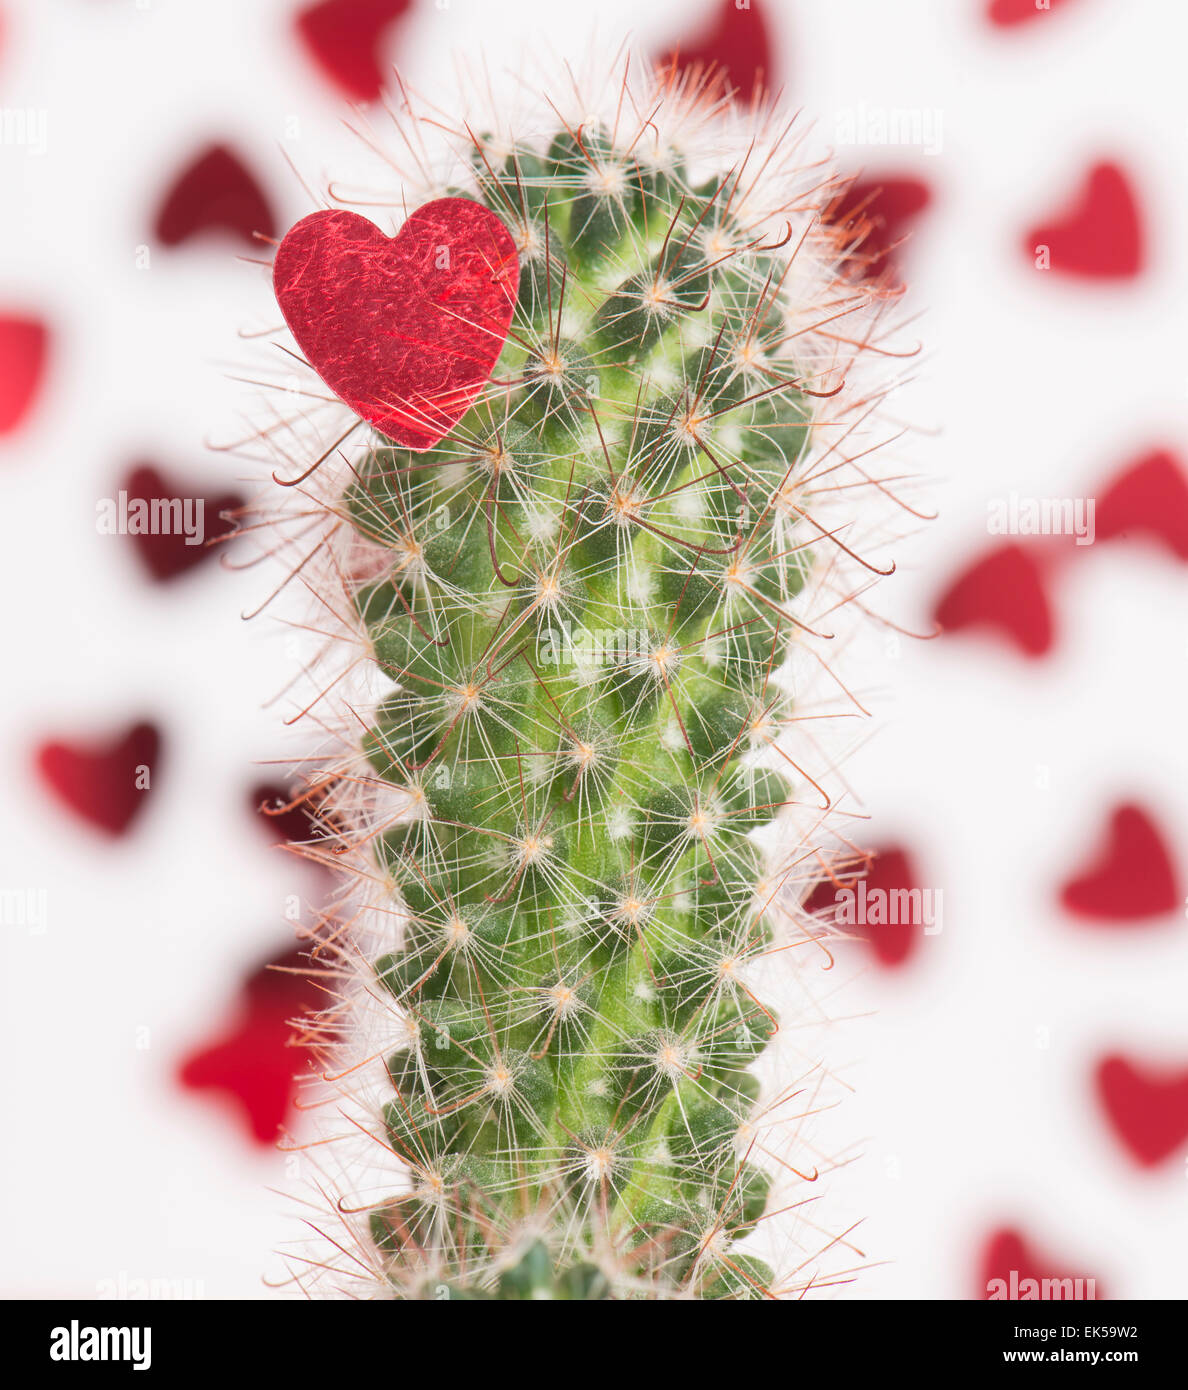 Coeur rouge pris sur le net thornes d'un cactus. Image conceptuelle de heartbreak et quand l'amour fait mal. Banque D'Images